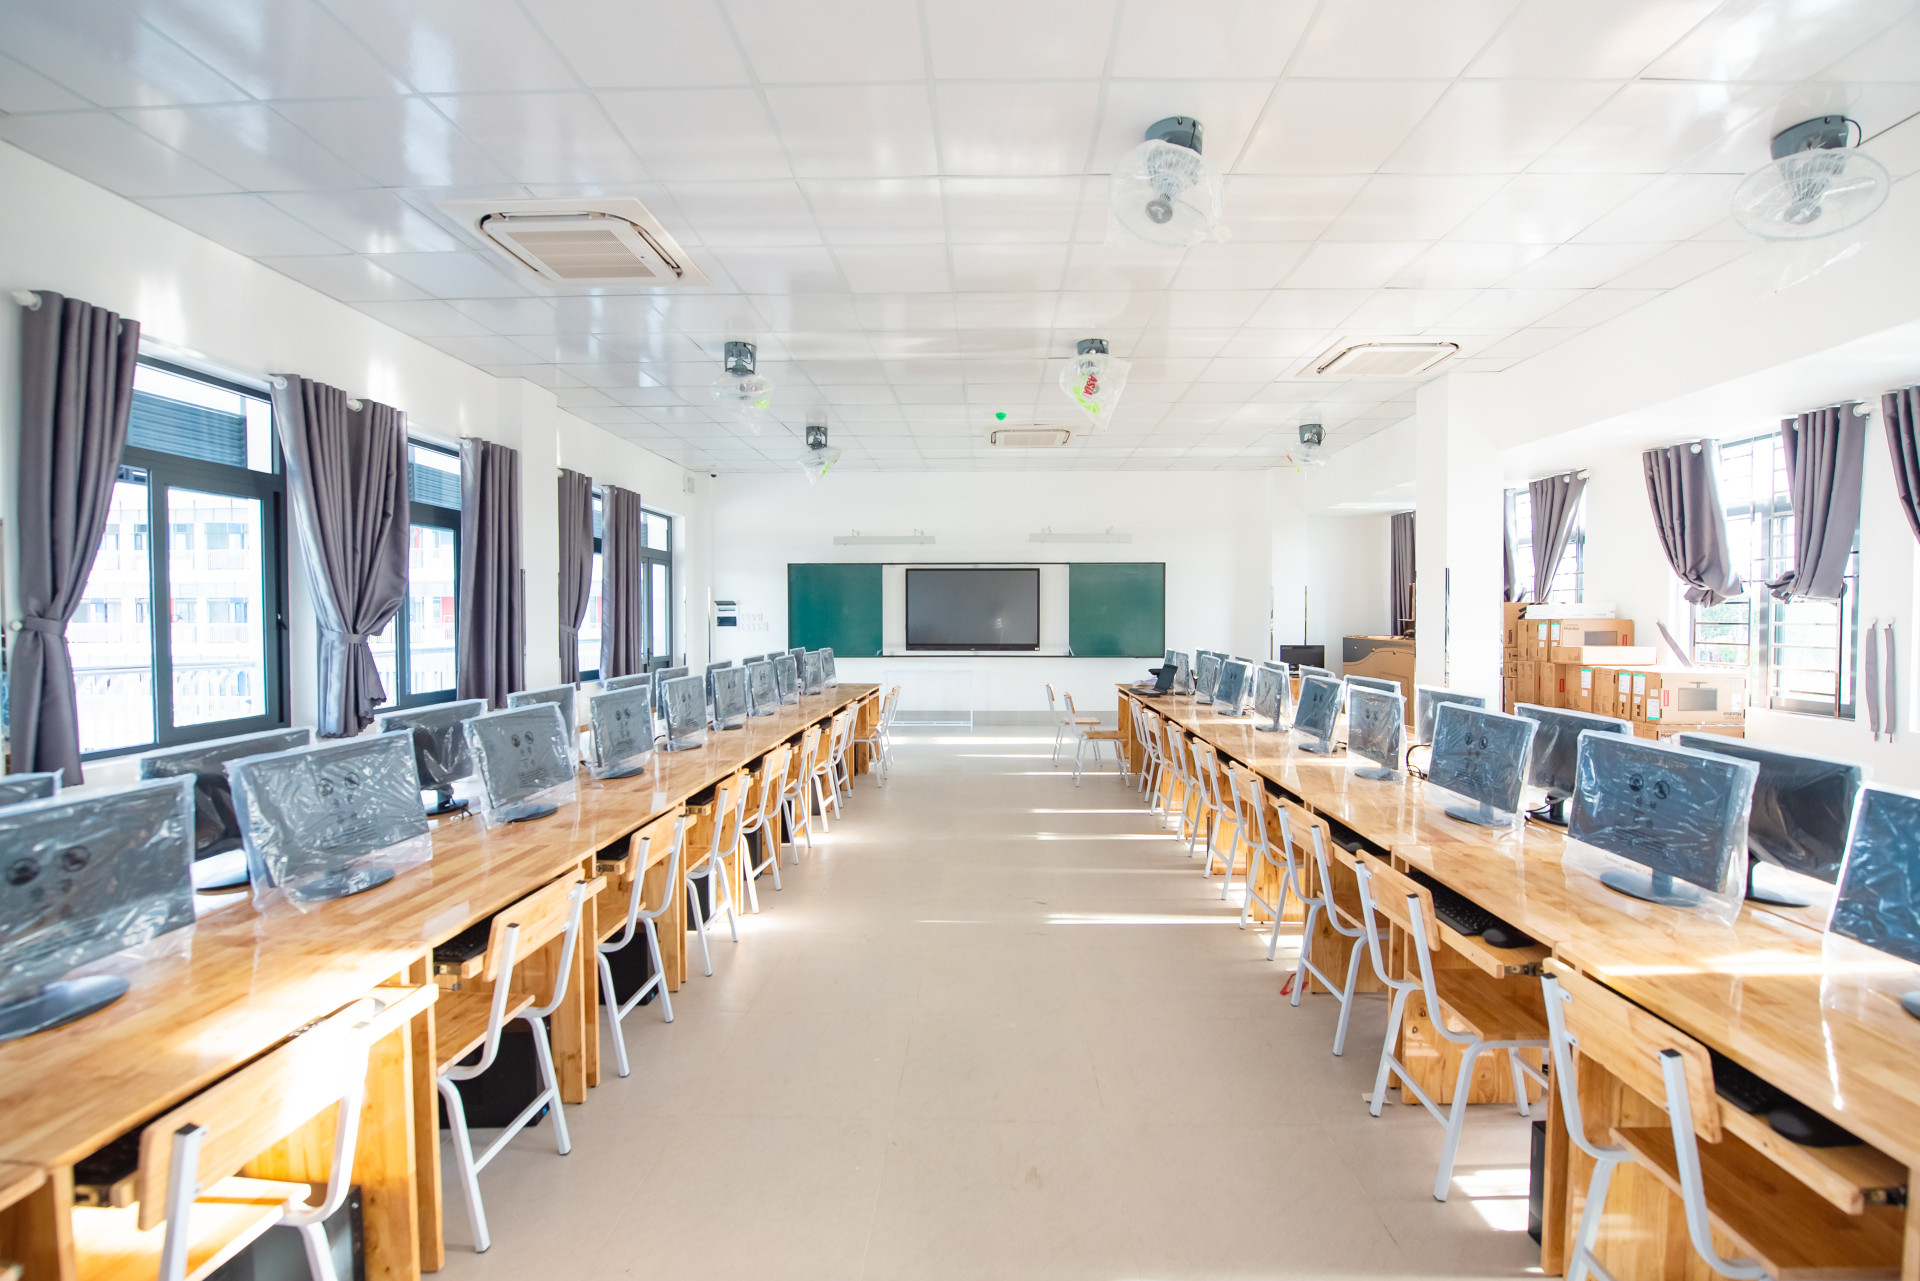 Tất cả các phòng học đều được trang bị màn hình tương tác hiện đại hỗ trợ việc dạy và học.